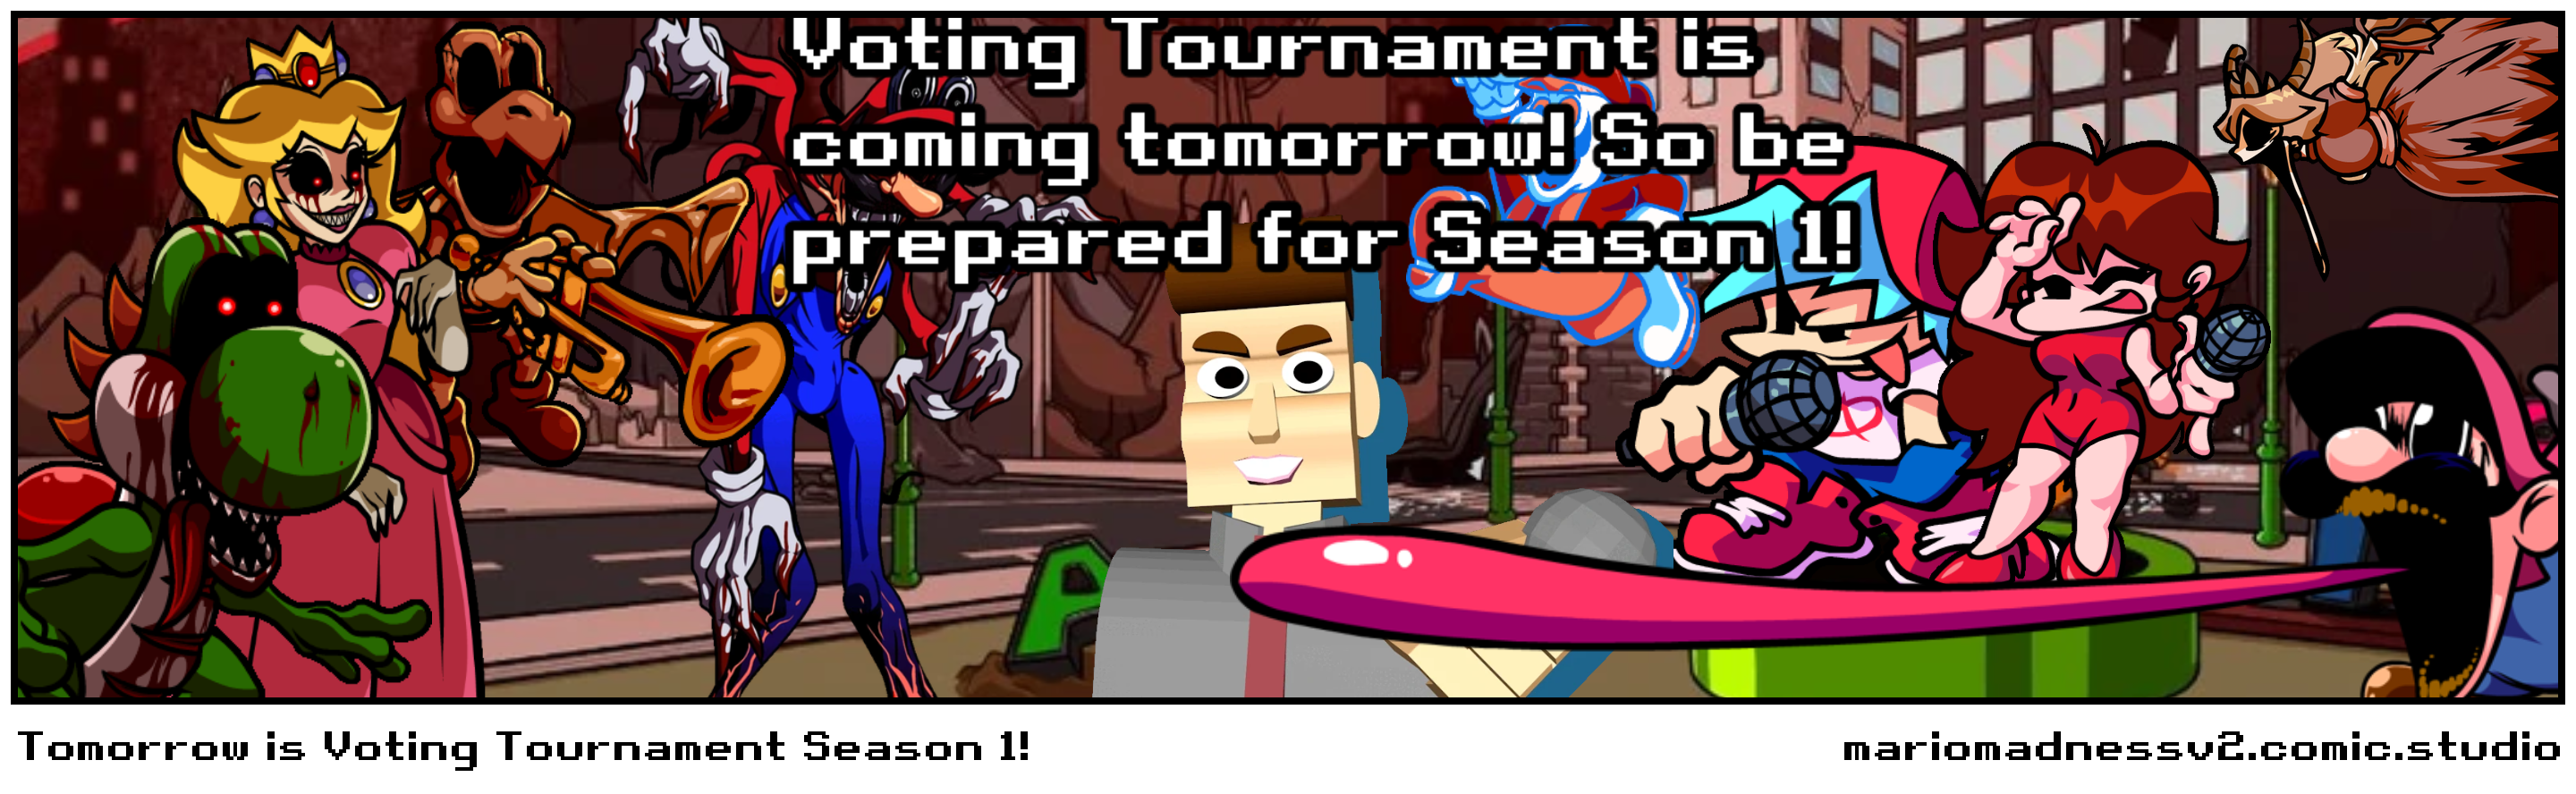 Tomorrow is Voting Tournament Season 1!